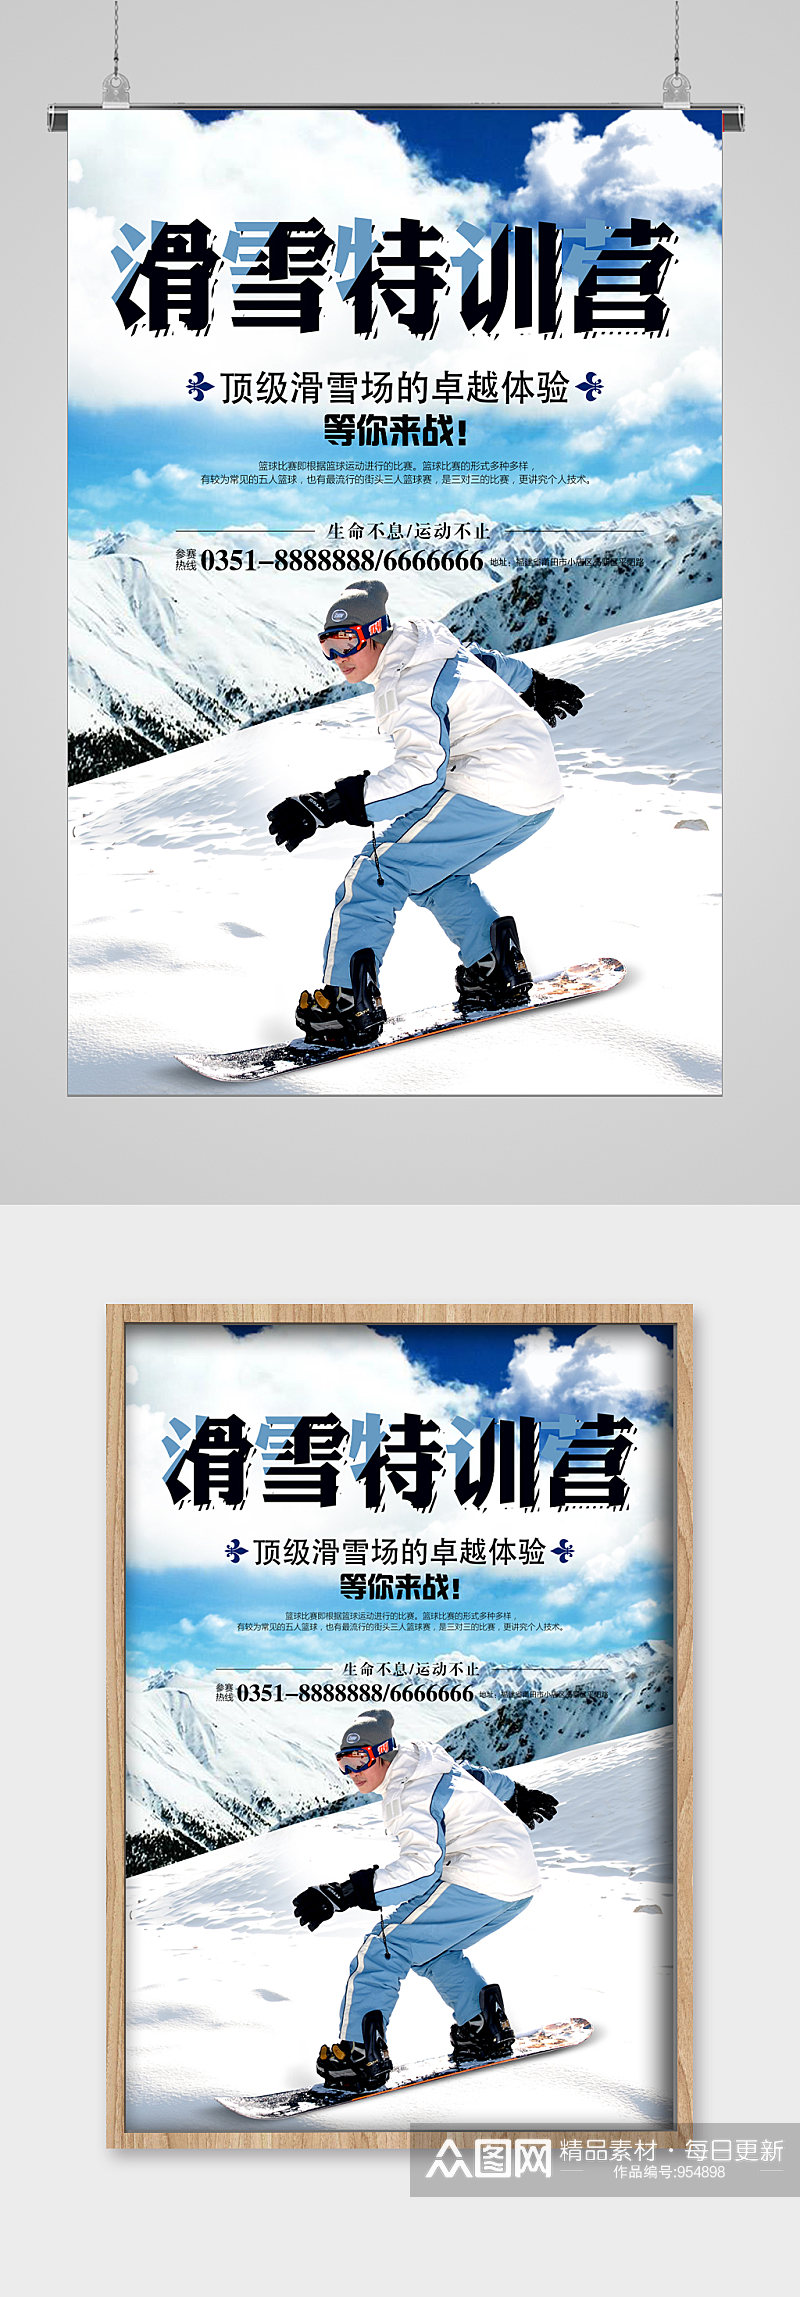 冬季滑雪特训营宣传海报素材